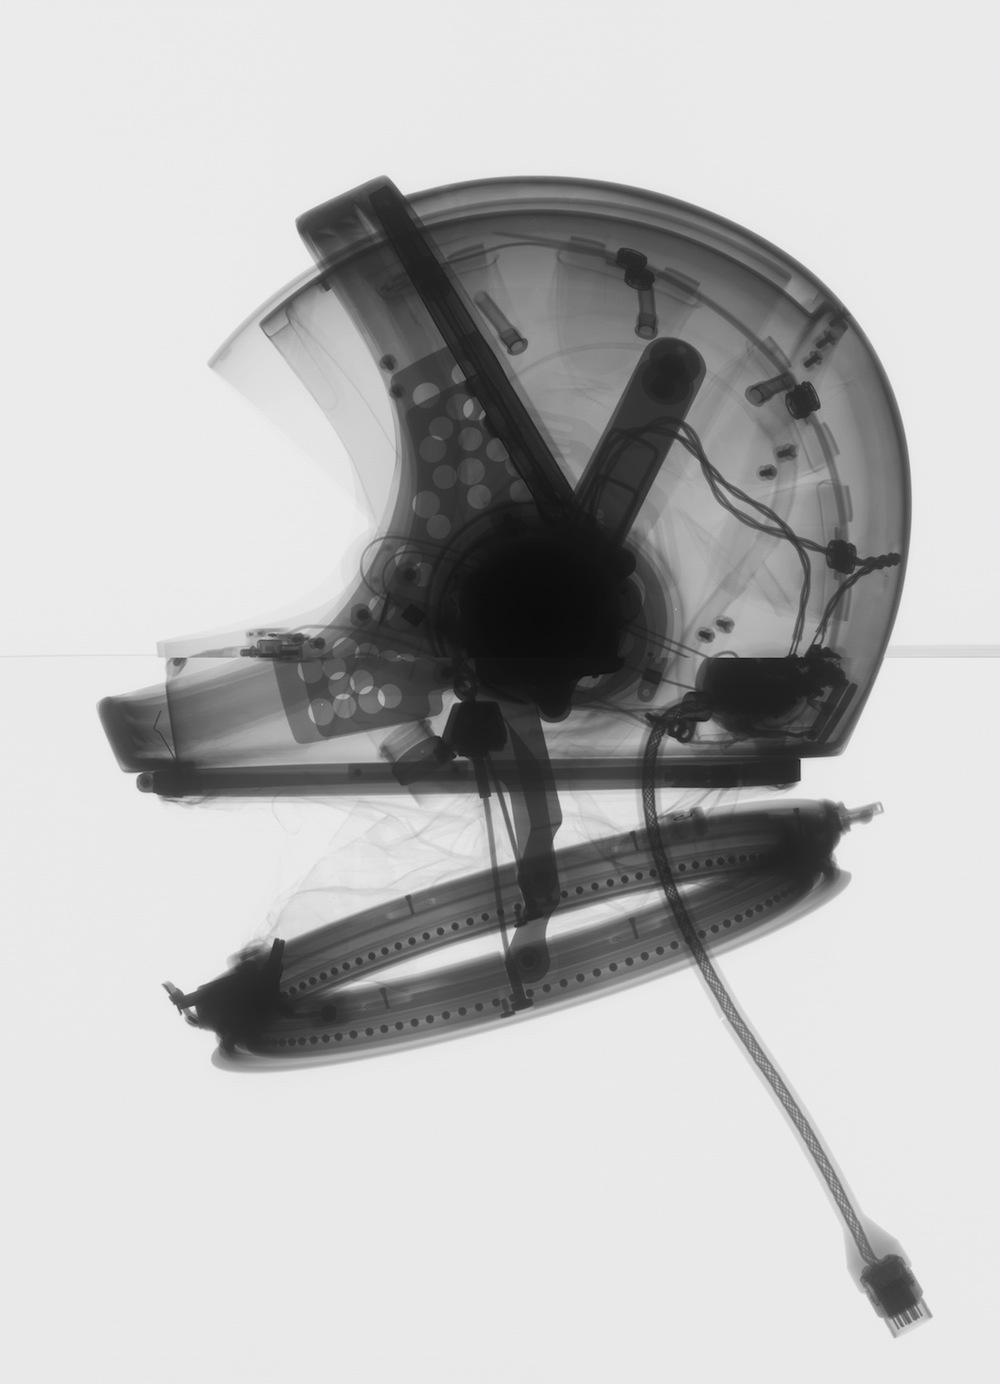 קסדת החליפה | צילום: Mark Avino/Smithsonian Institution